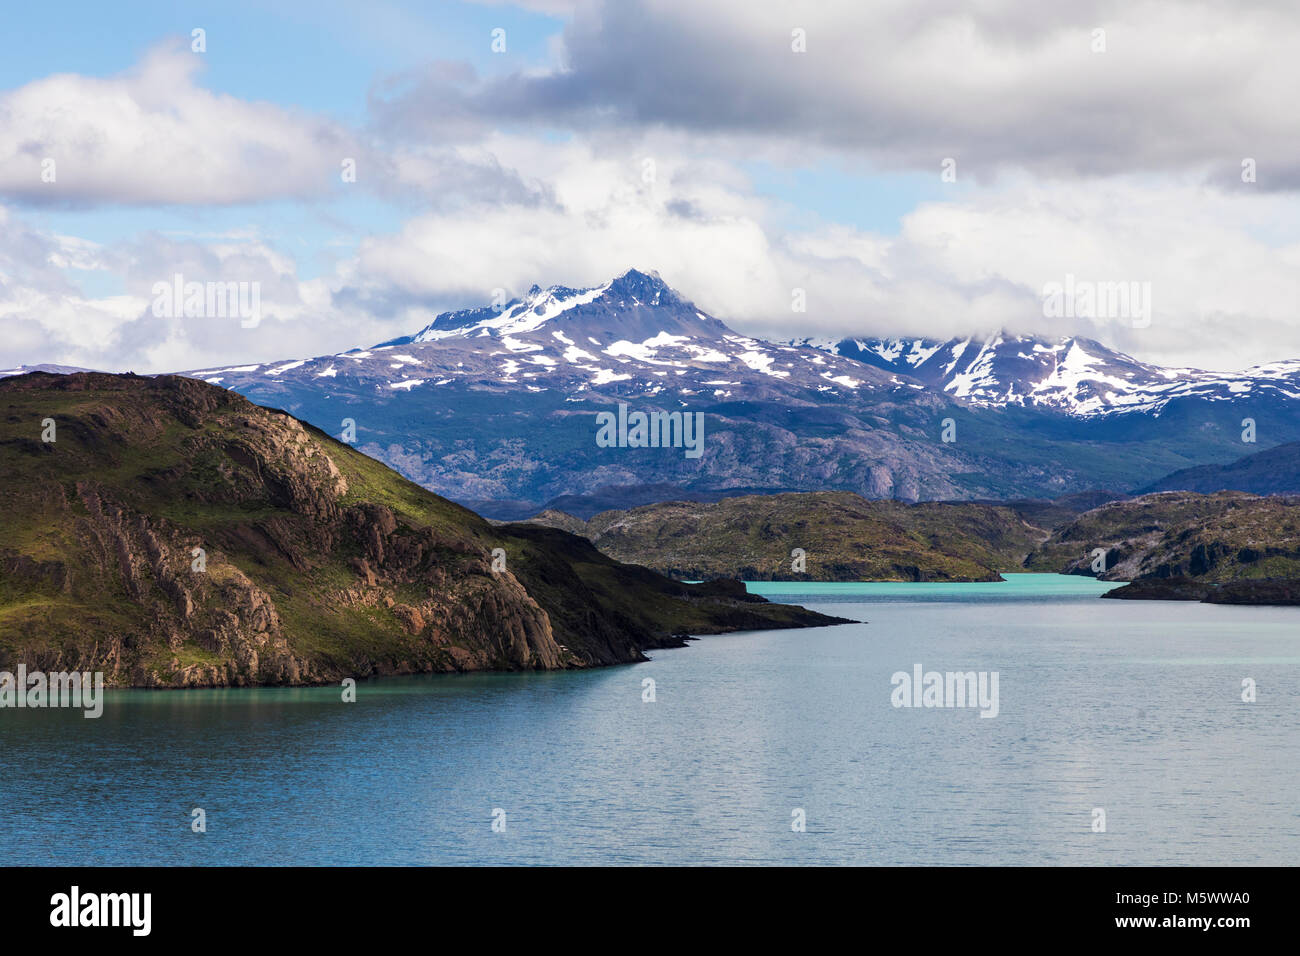 Lago Nordenskjold, Cordillera Paine au-delà ; Parc National Torres del Paine, Chili Banque D'Images